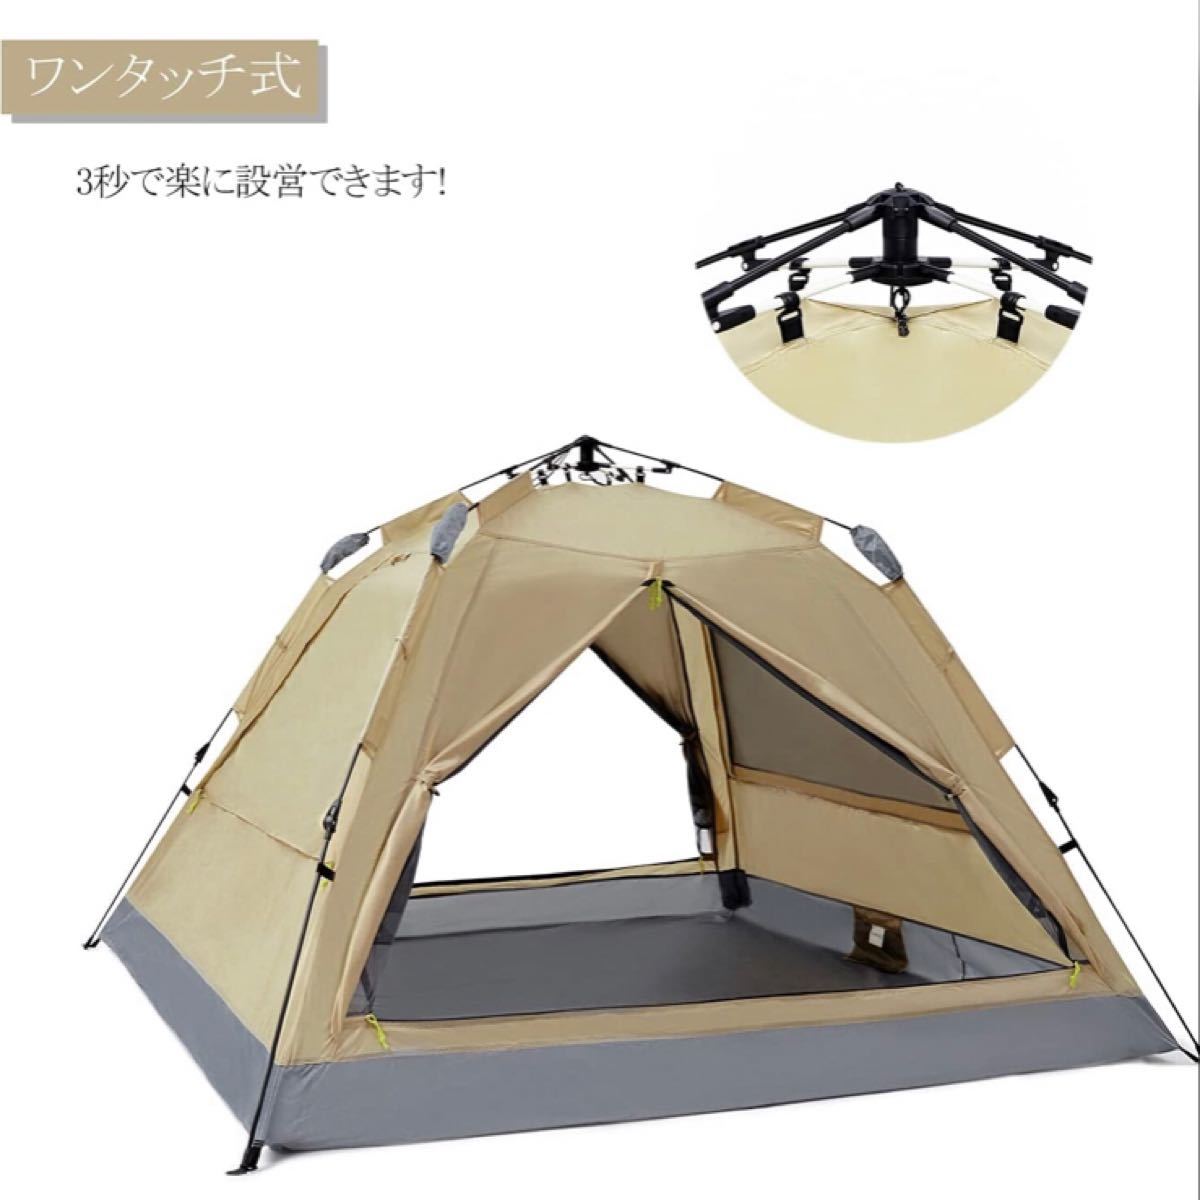 【ワンタッチ式】テント 3~4人用 二重層 設営簡単 uvカット 防災 防風防水